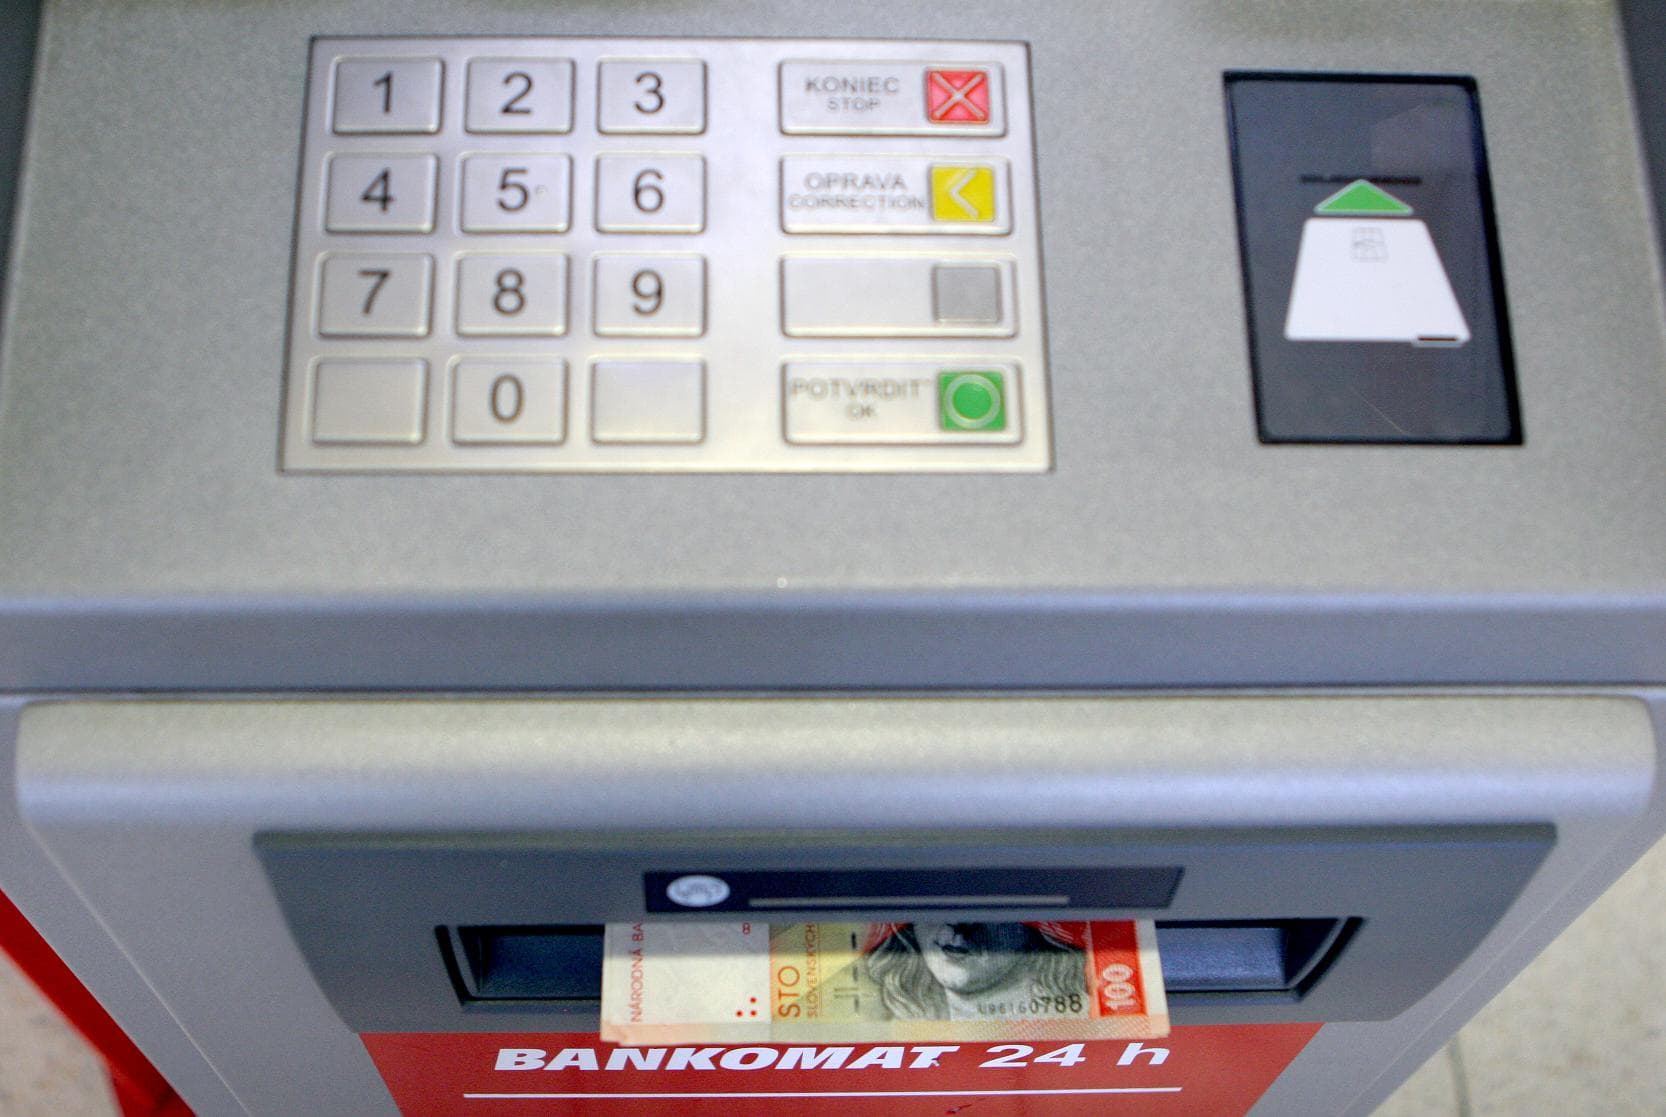 Felrobbantották a bankautomatát, így vittek el 20 ezer eurót Pozsonyban